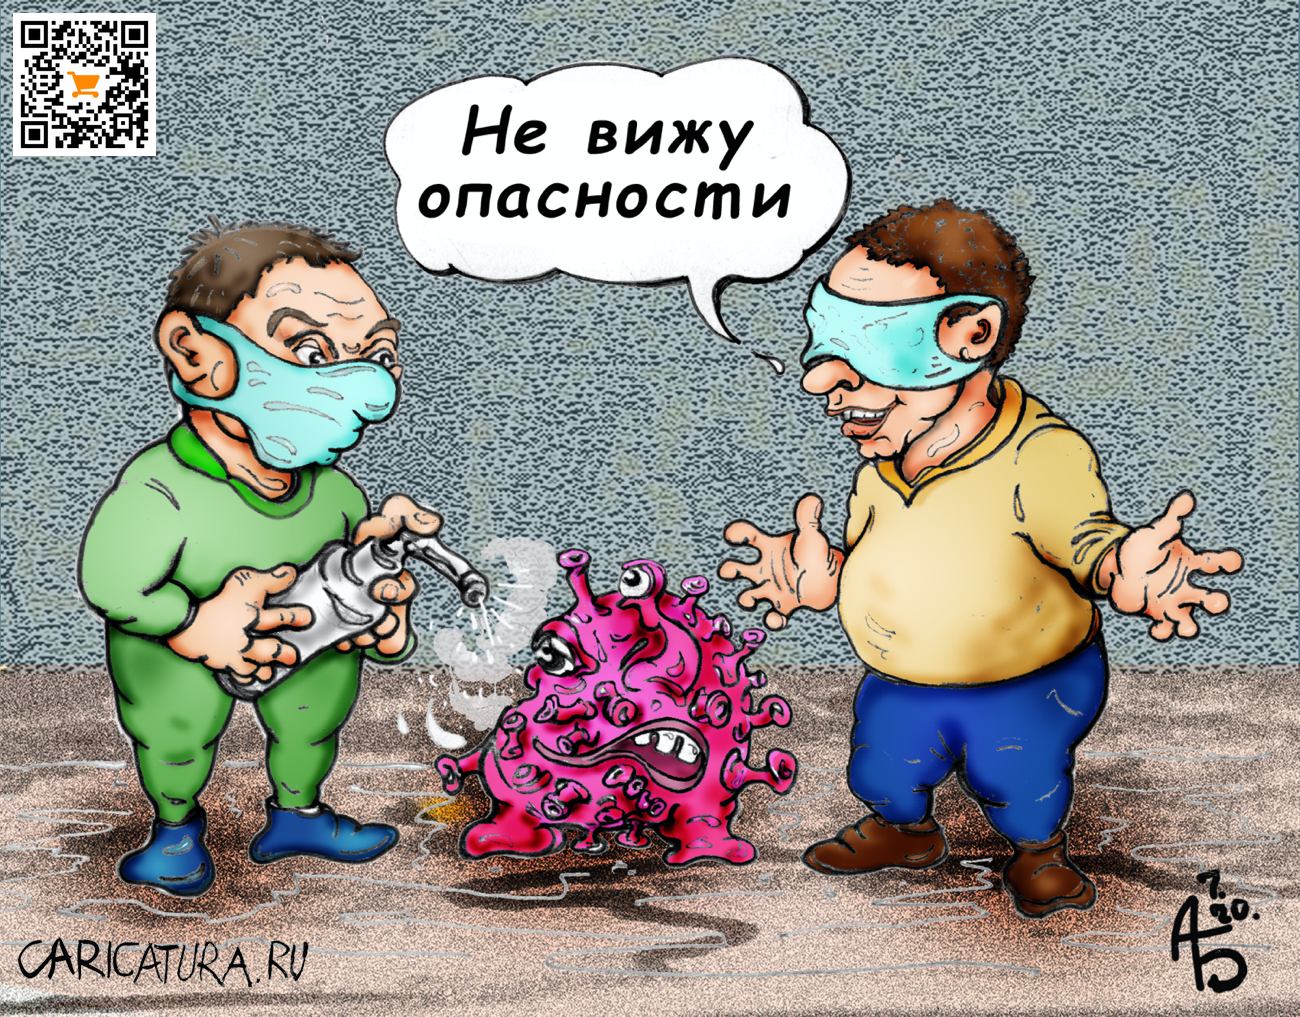 Карикатура "Пофигист", Александр Богданов